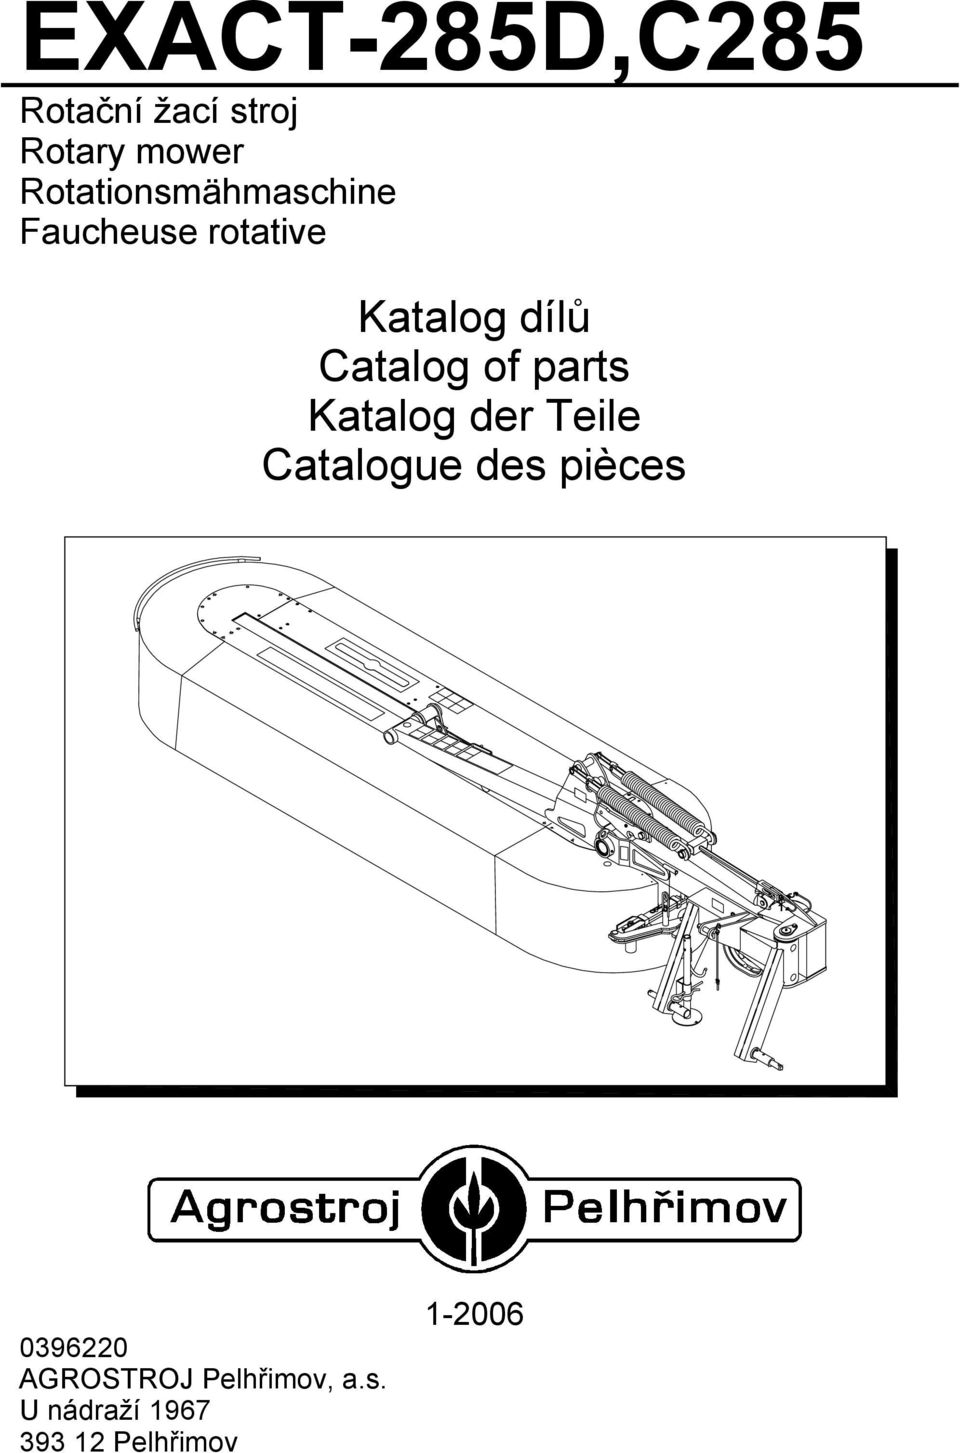 Catalog of parts Katalog der Teile Catalogue des pièces